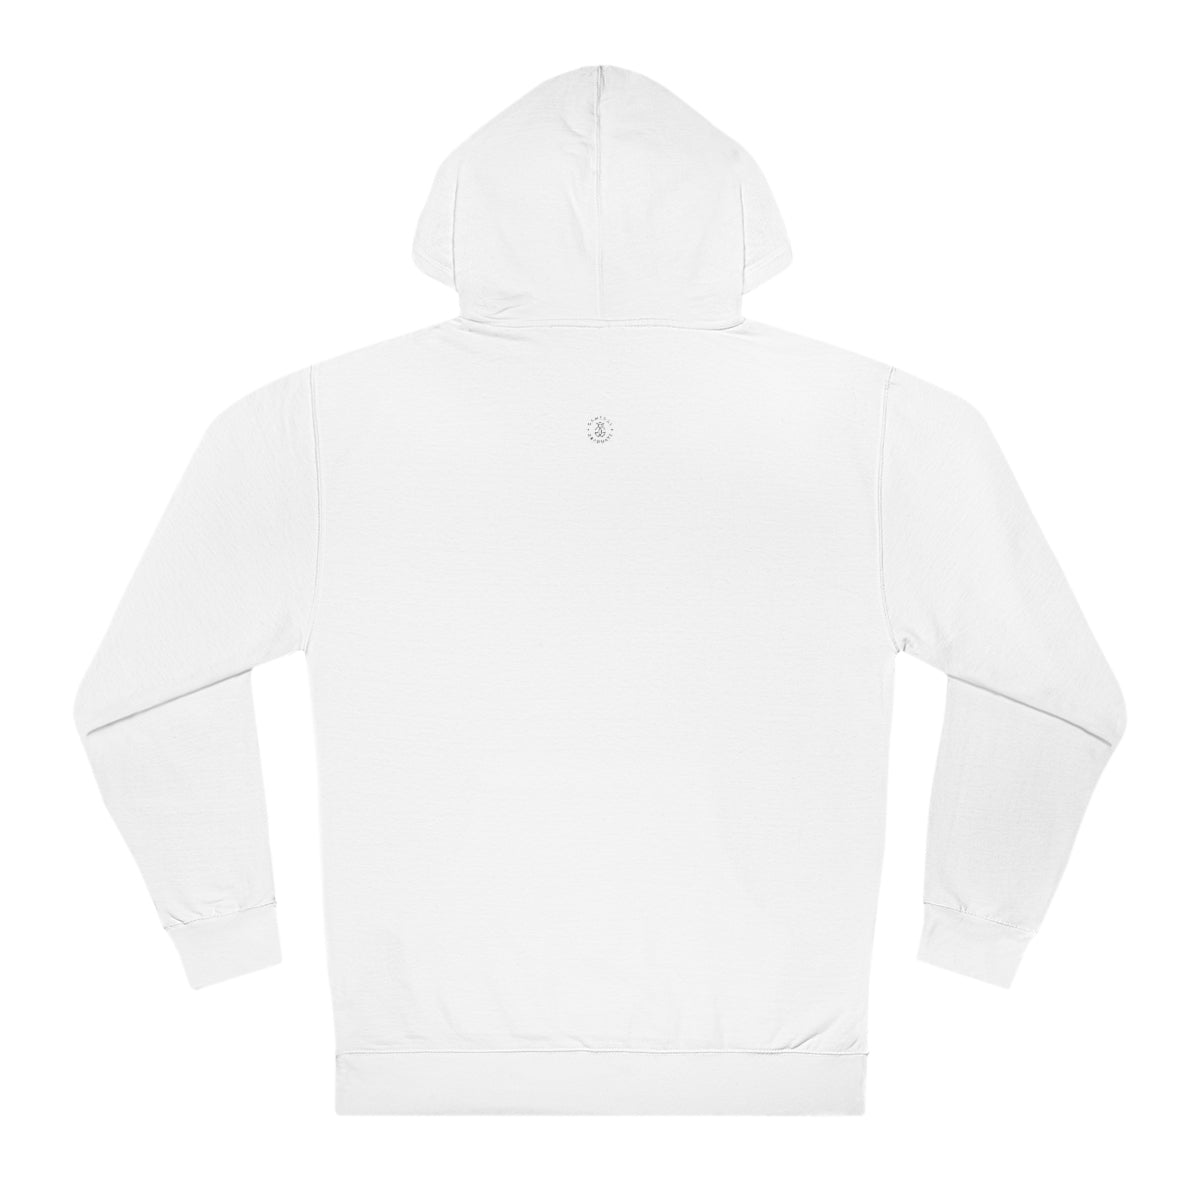 Washington Hooded Sweatshirt - GG - ITC